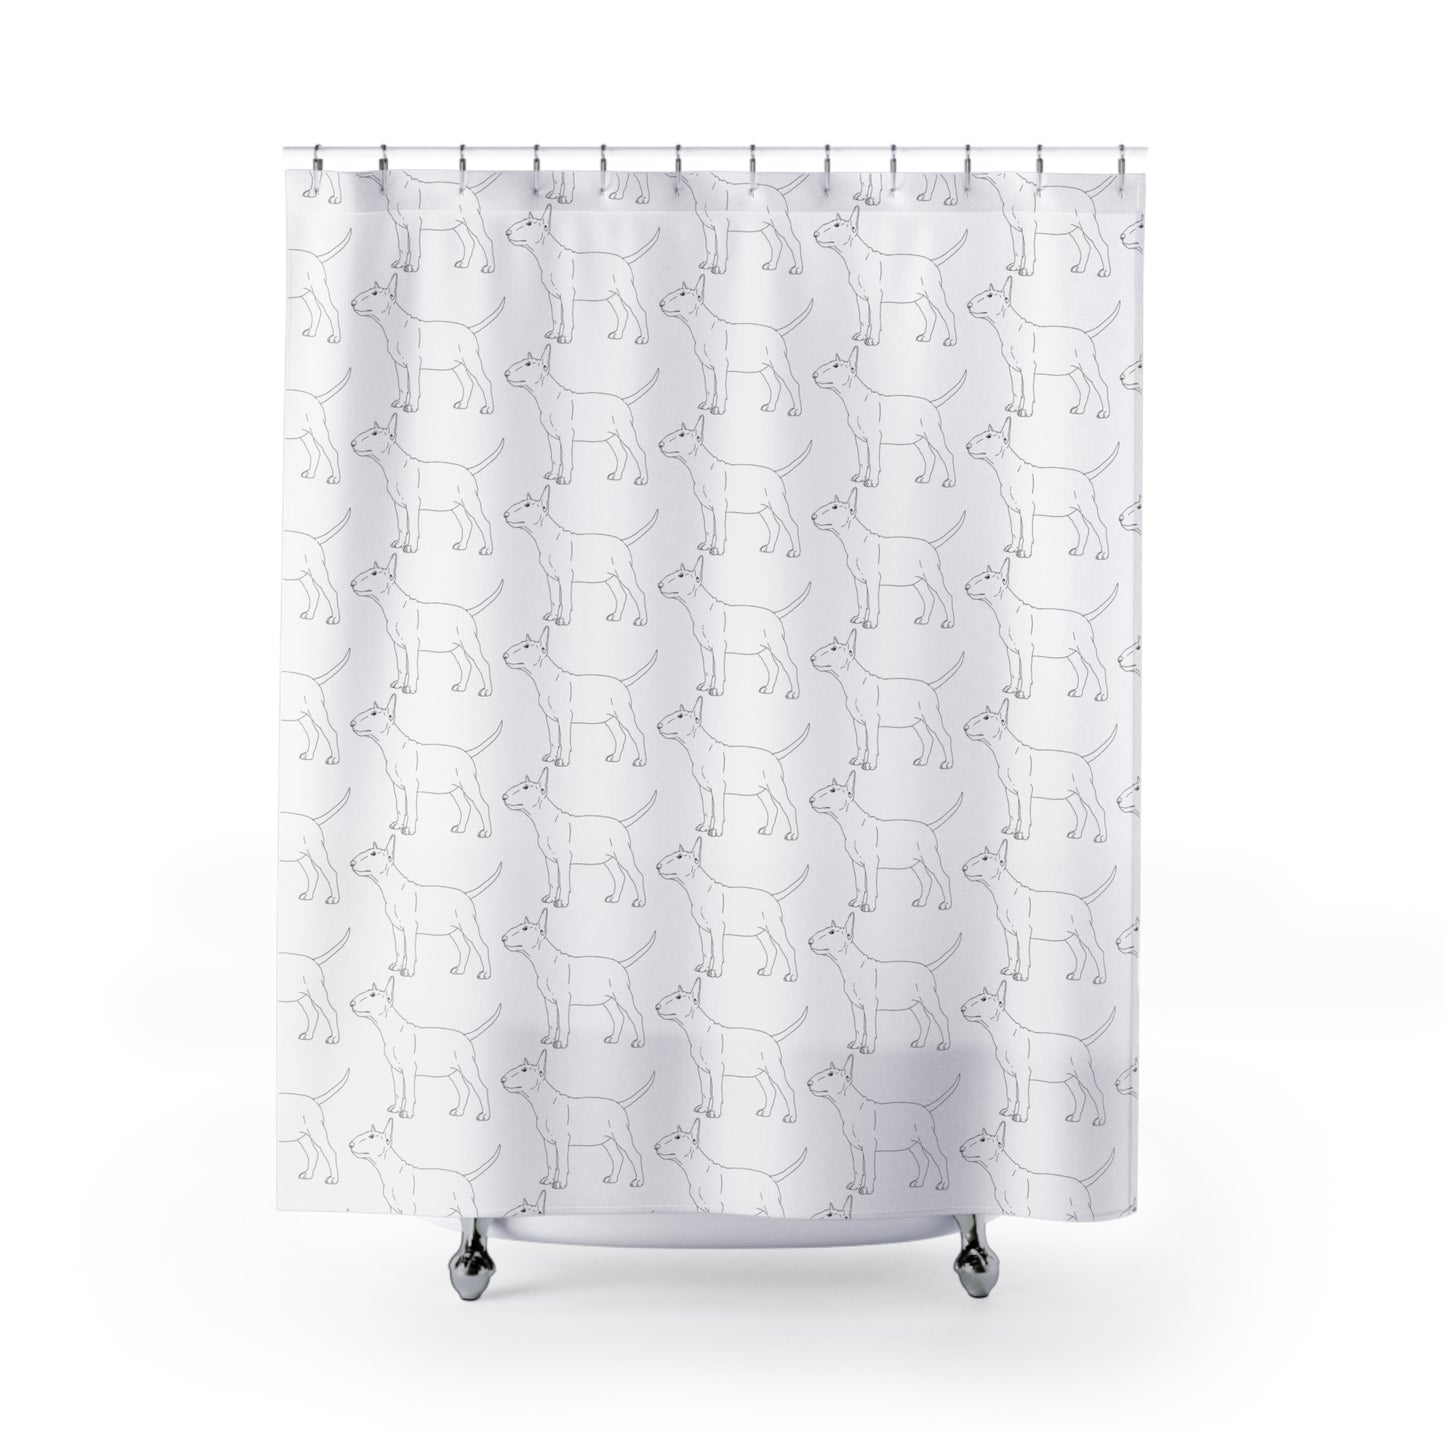 Bull Terrier Shower Curtains